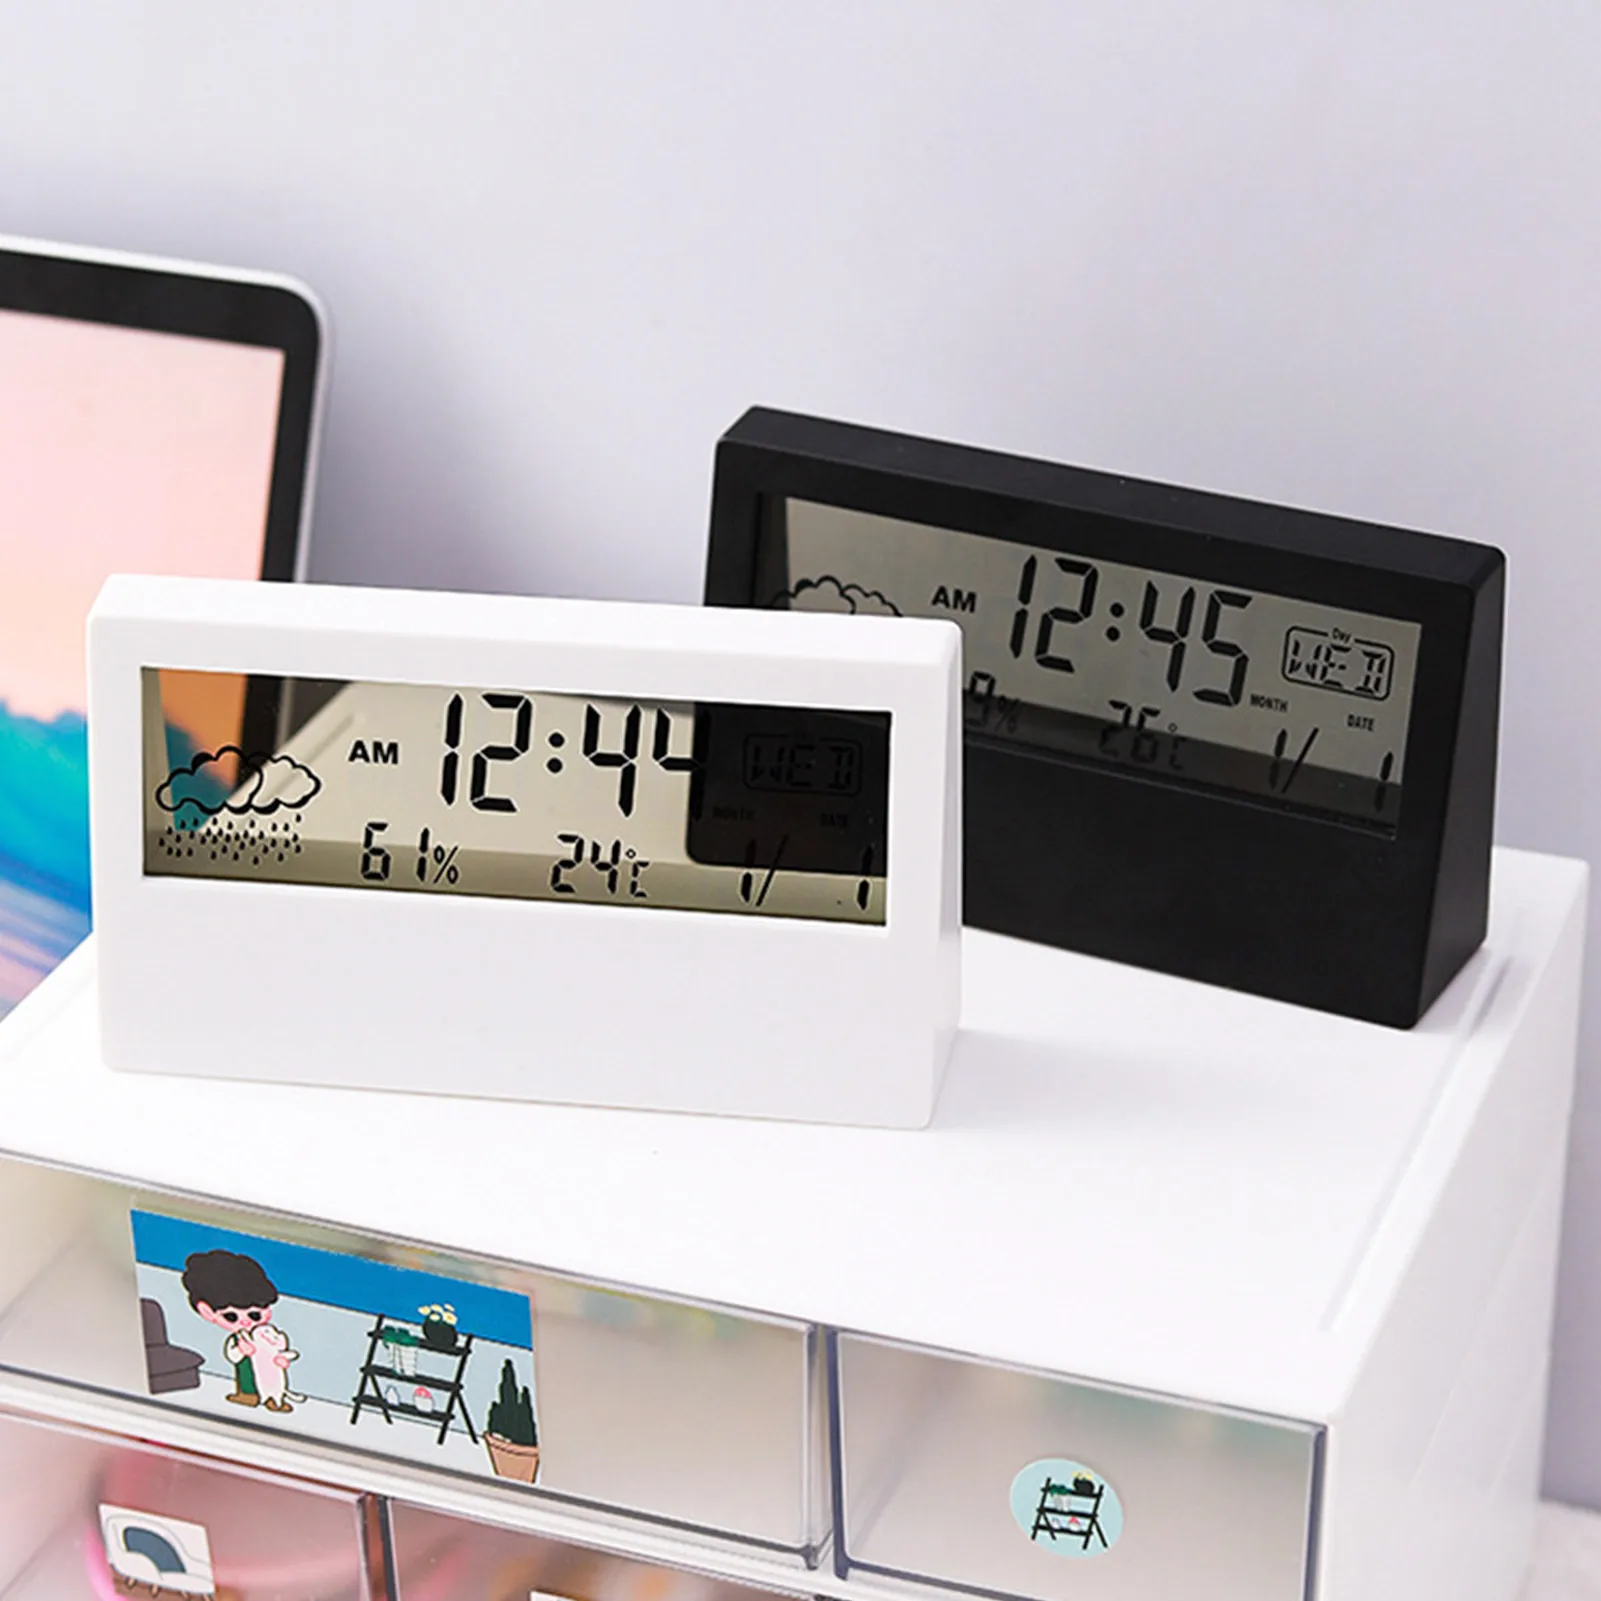 

Новый дизайн, прозрачные электронные часы-будильник с календарем, отображением температуры и влажности, настольные часы с повтором сигнала